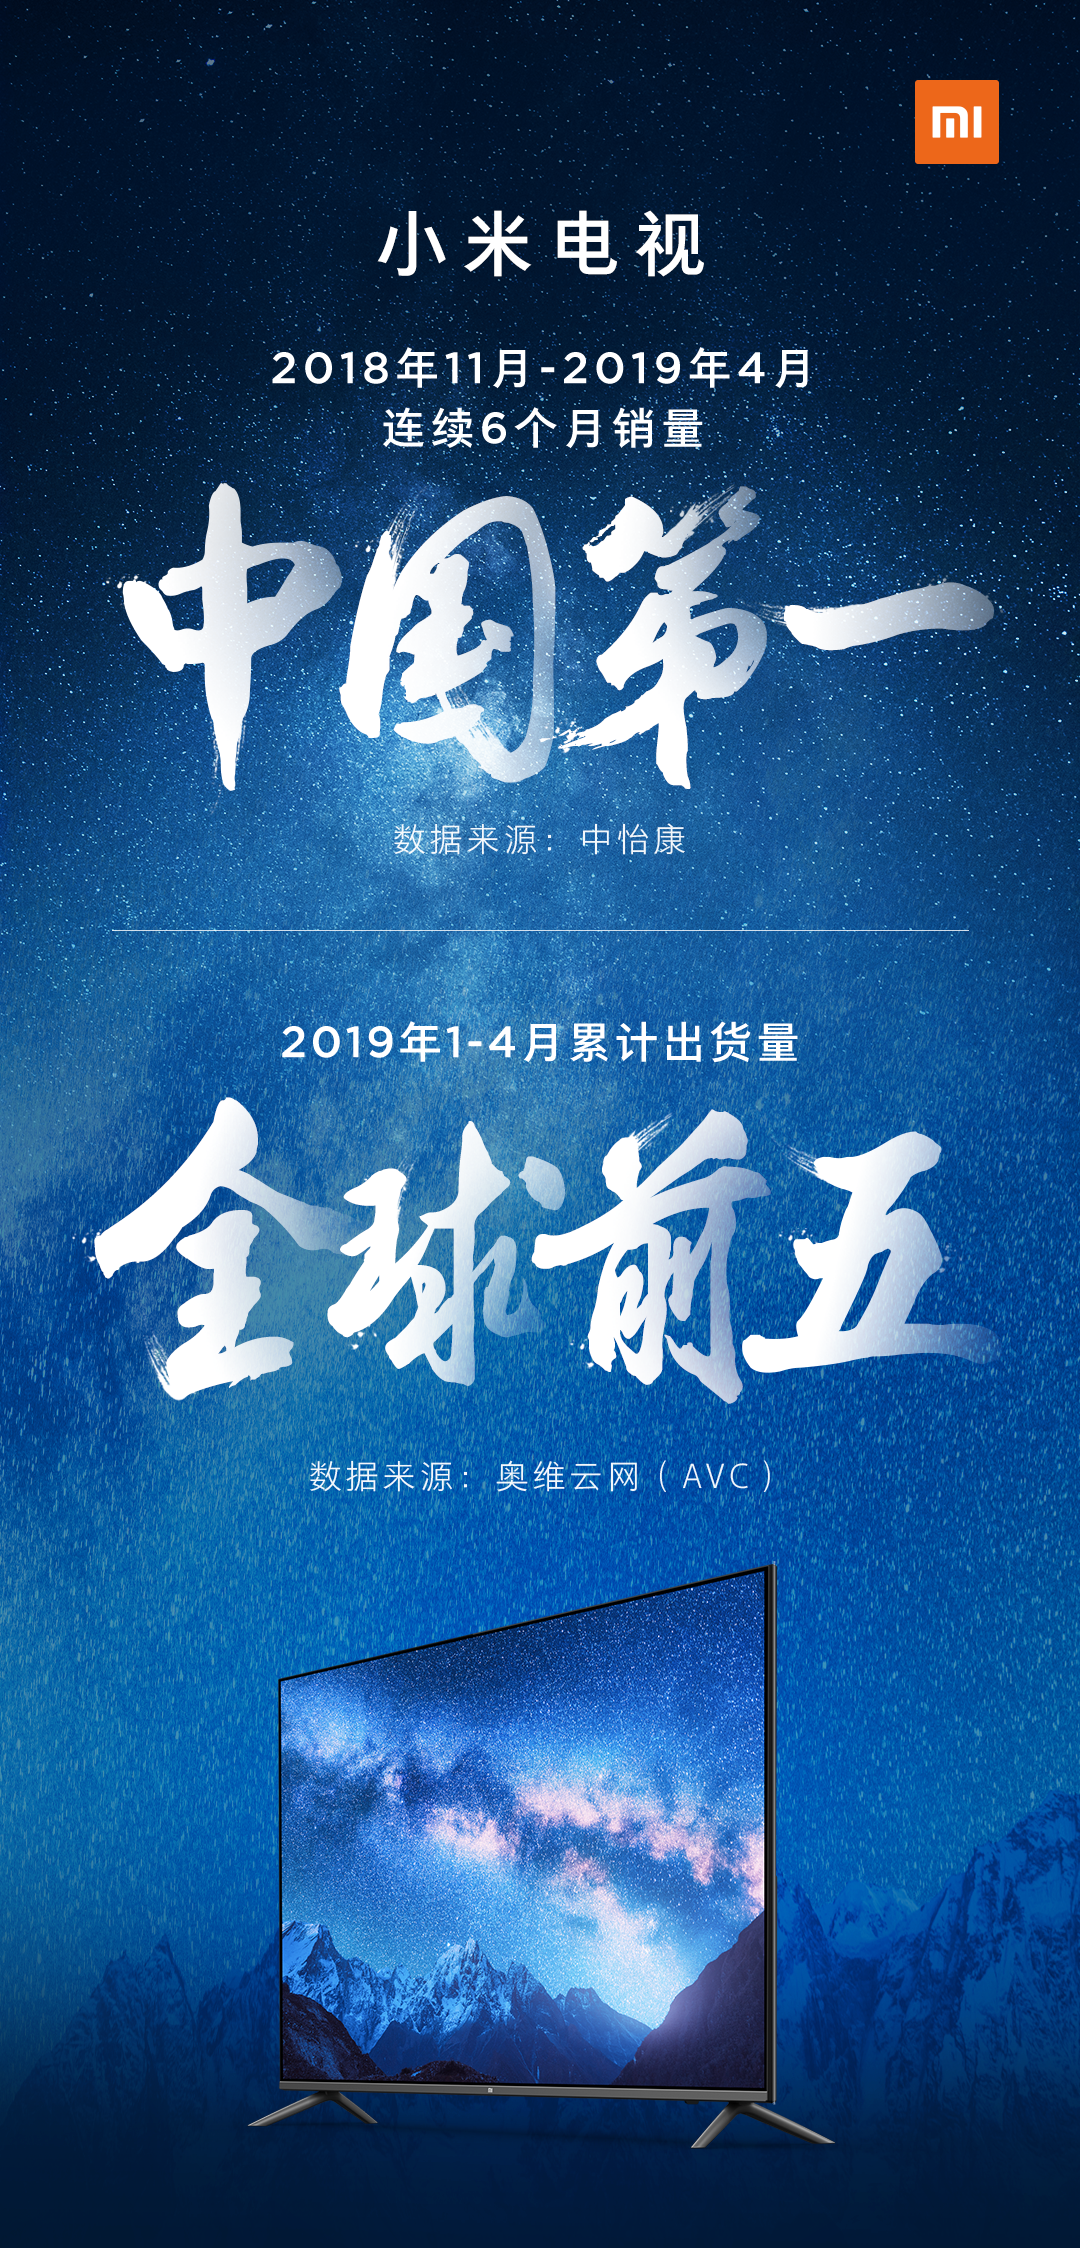 中国第一，全球前五！小米电视有望实现“2019年度第一”目标